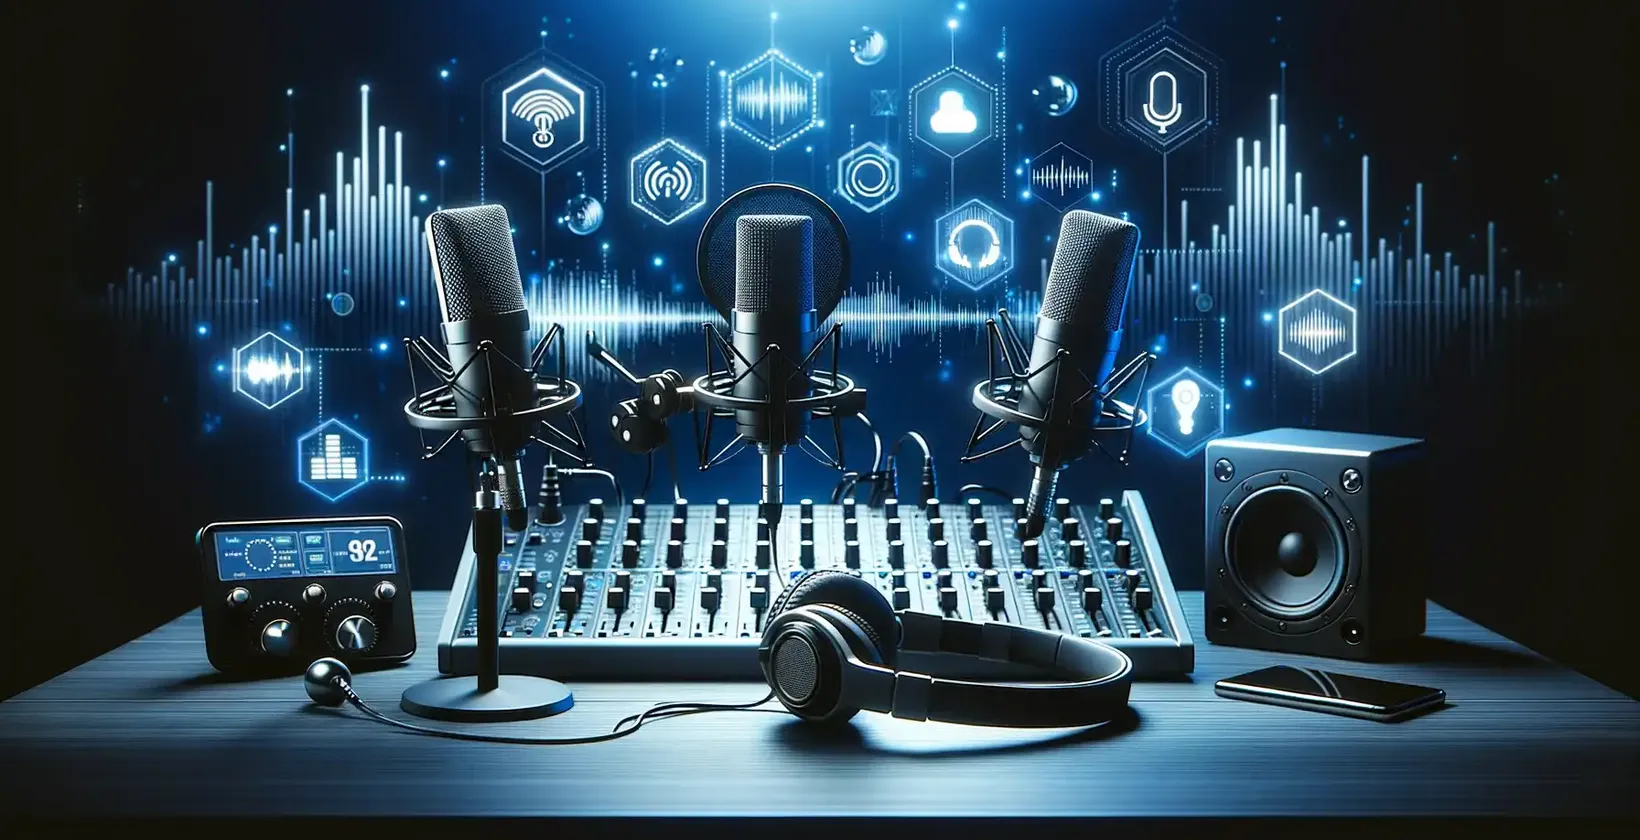 Zvukové zariadenie a mikrofón umiestnené na stole na prepisovanie podcastov, stratégia na prilákanie ďalších zákazníkov.